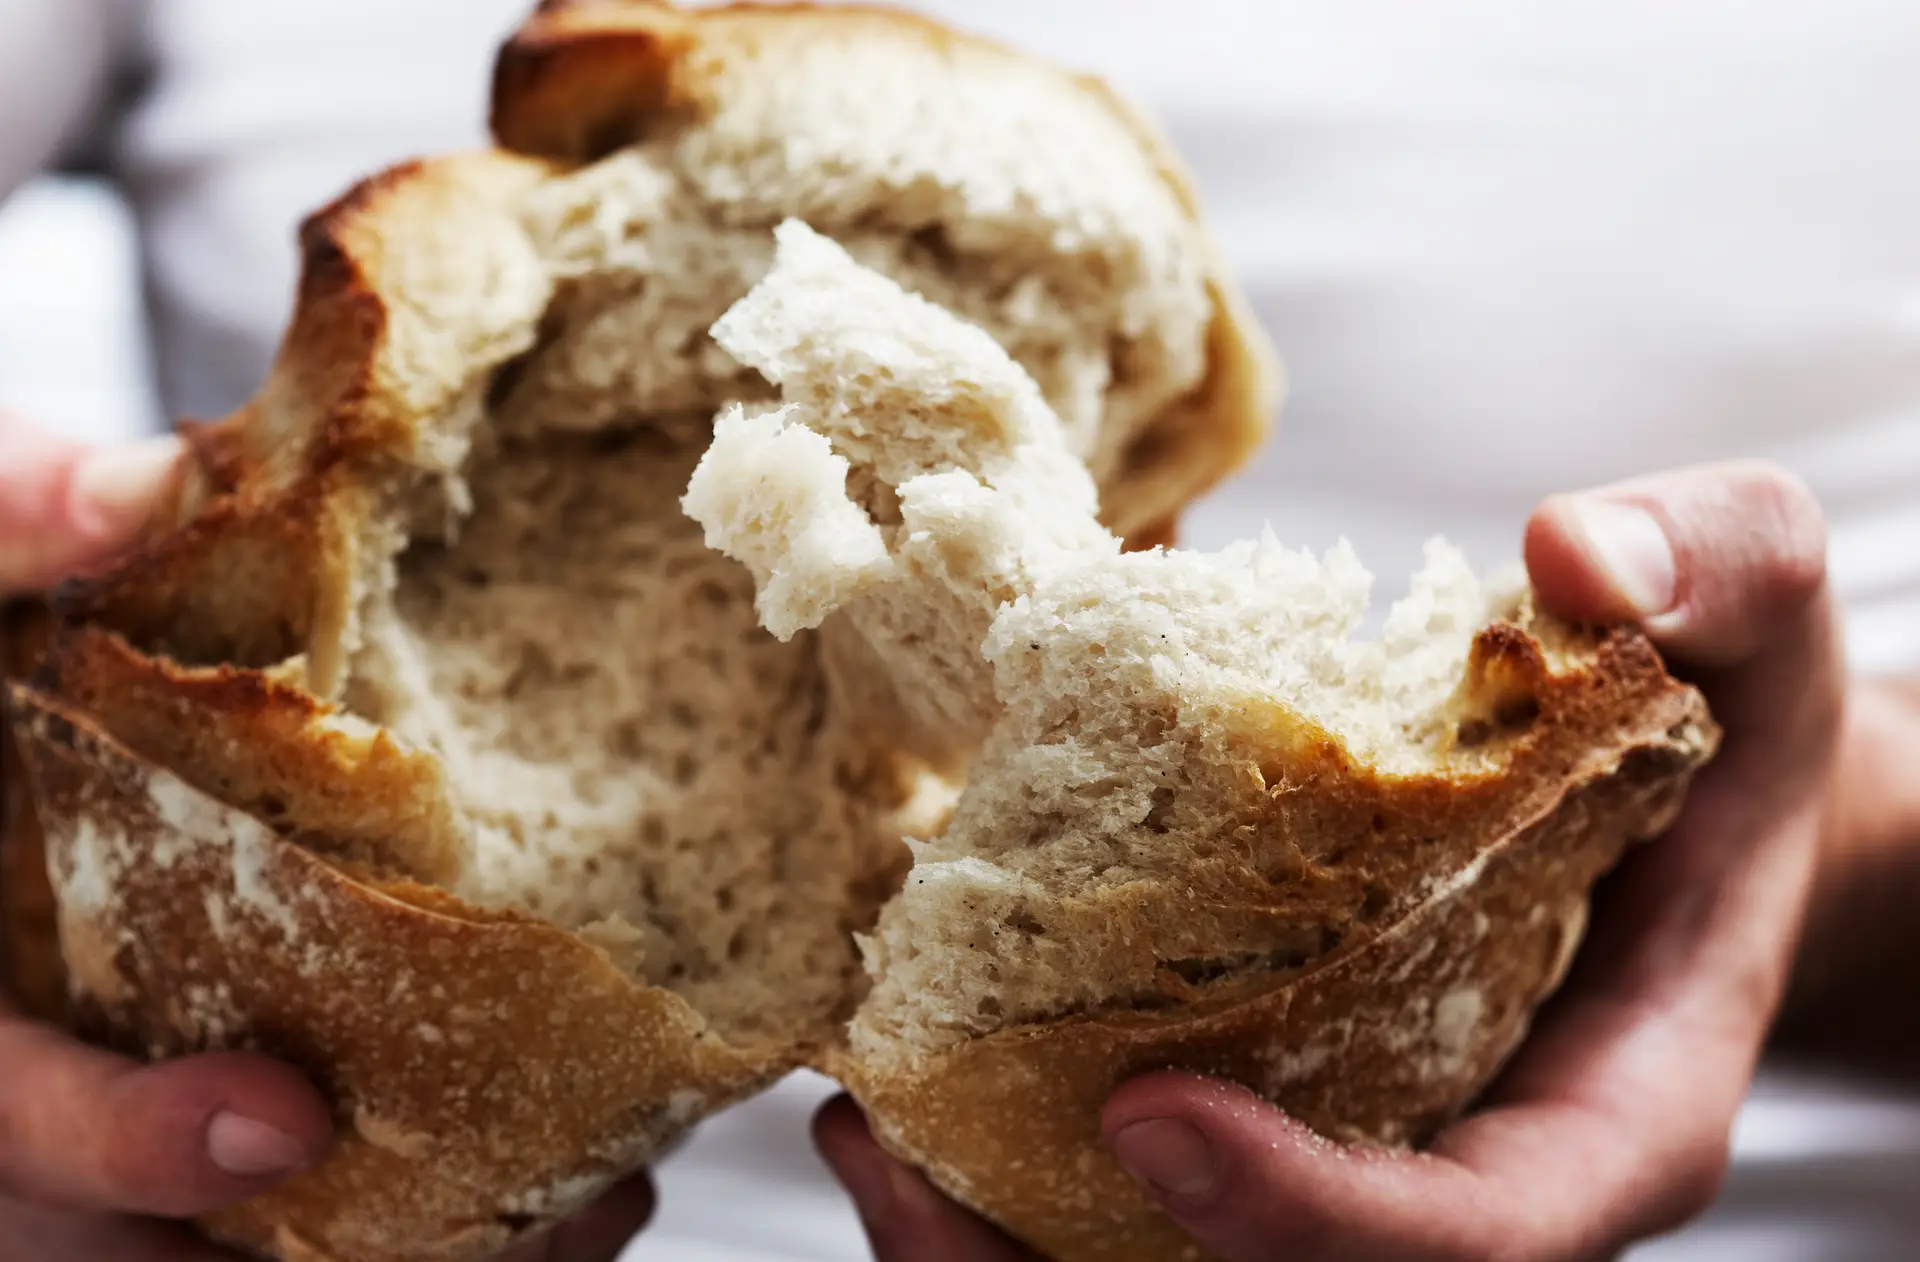 Preço do pão deverá voltar a subir em 2023